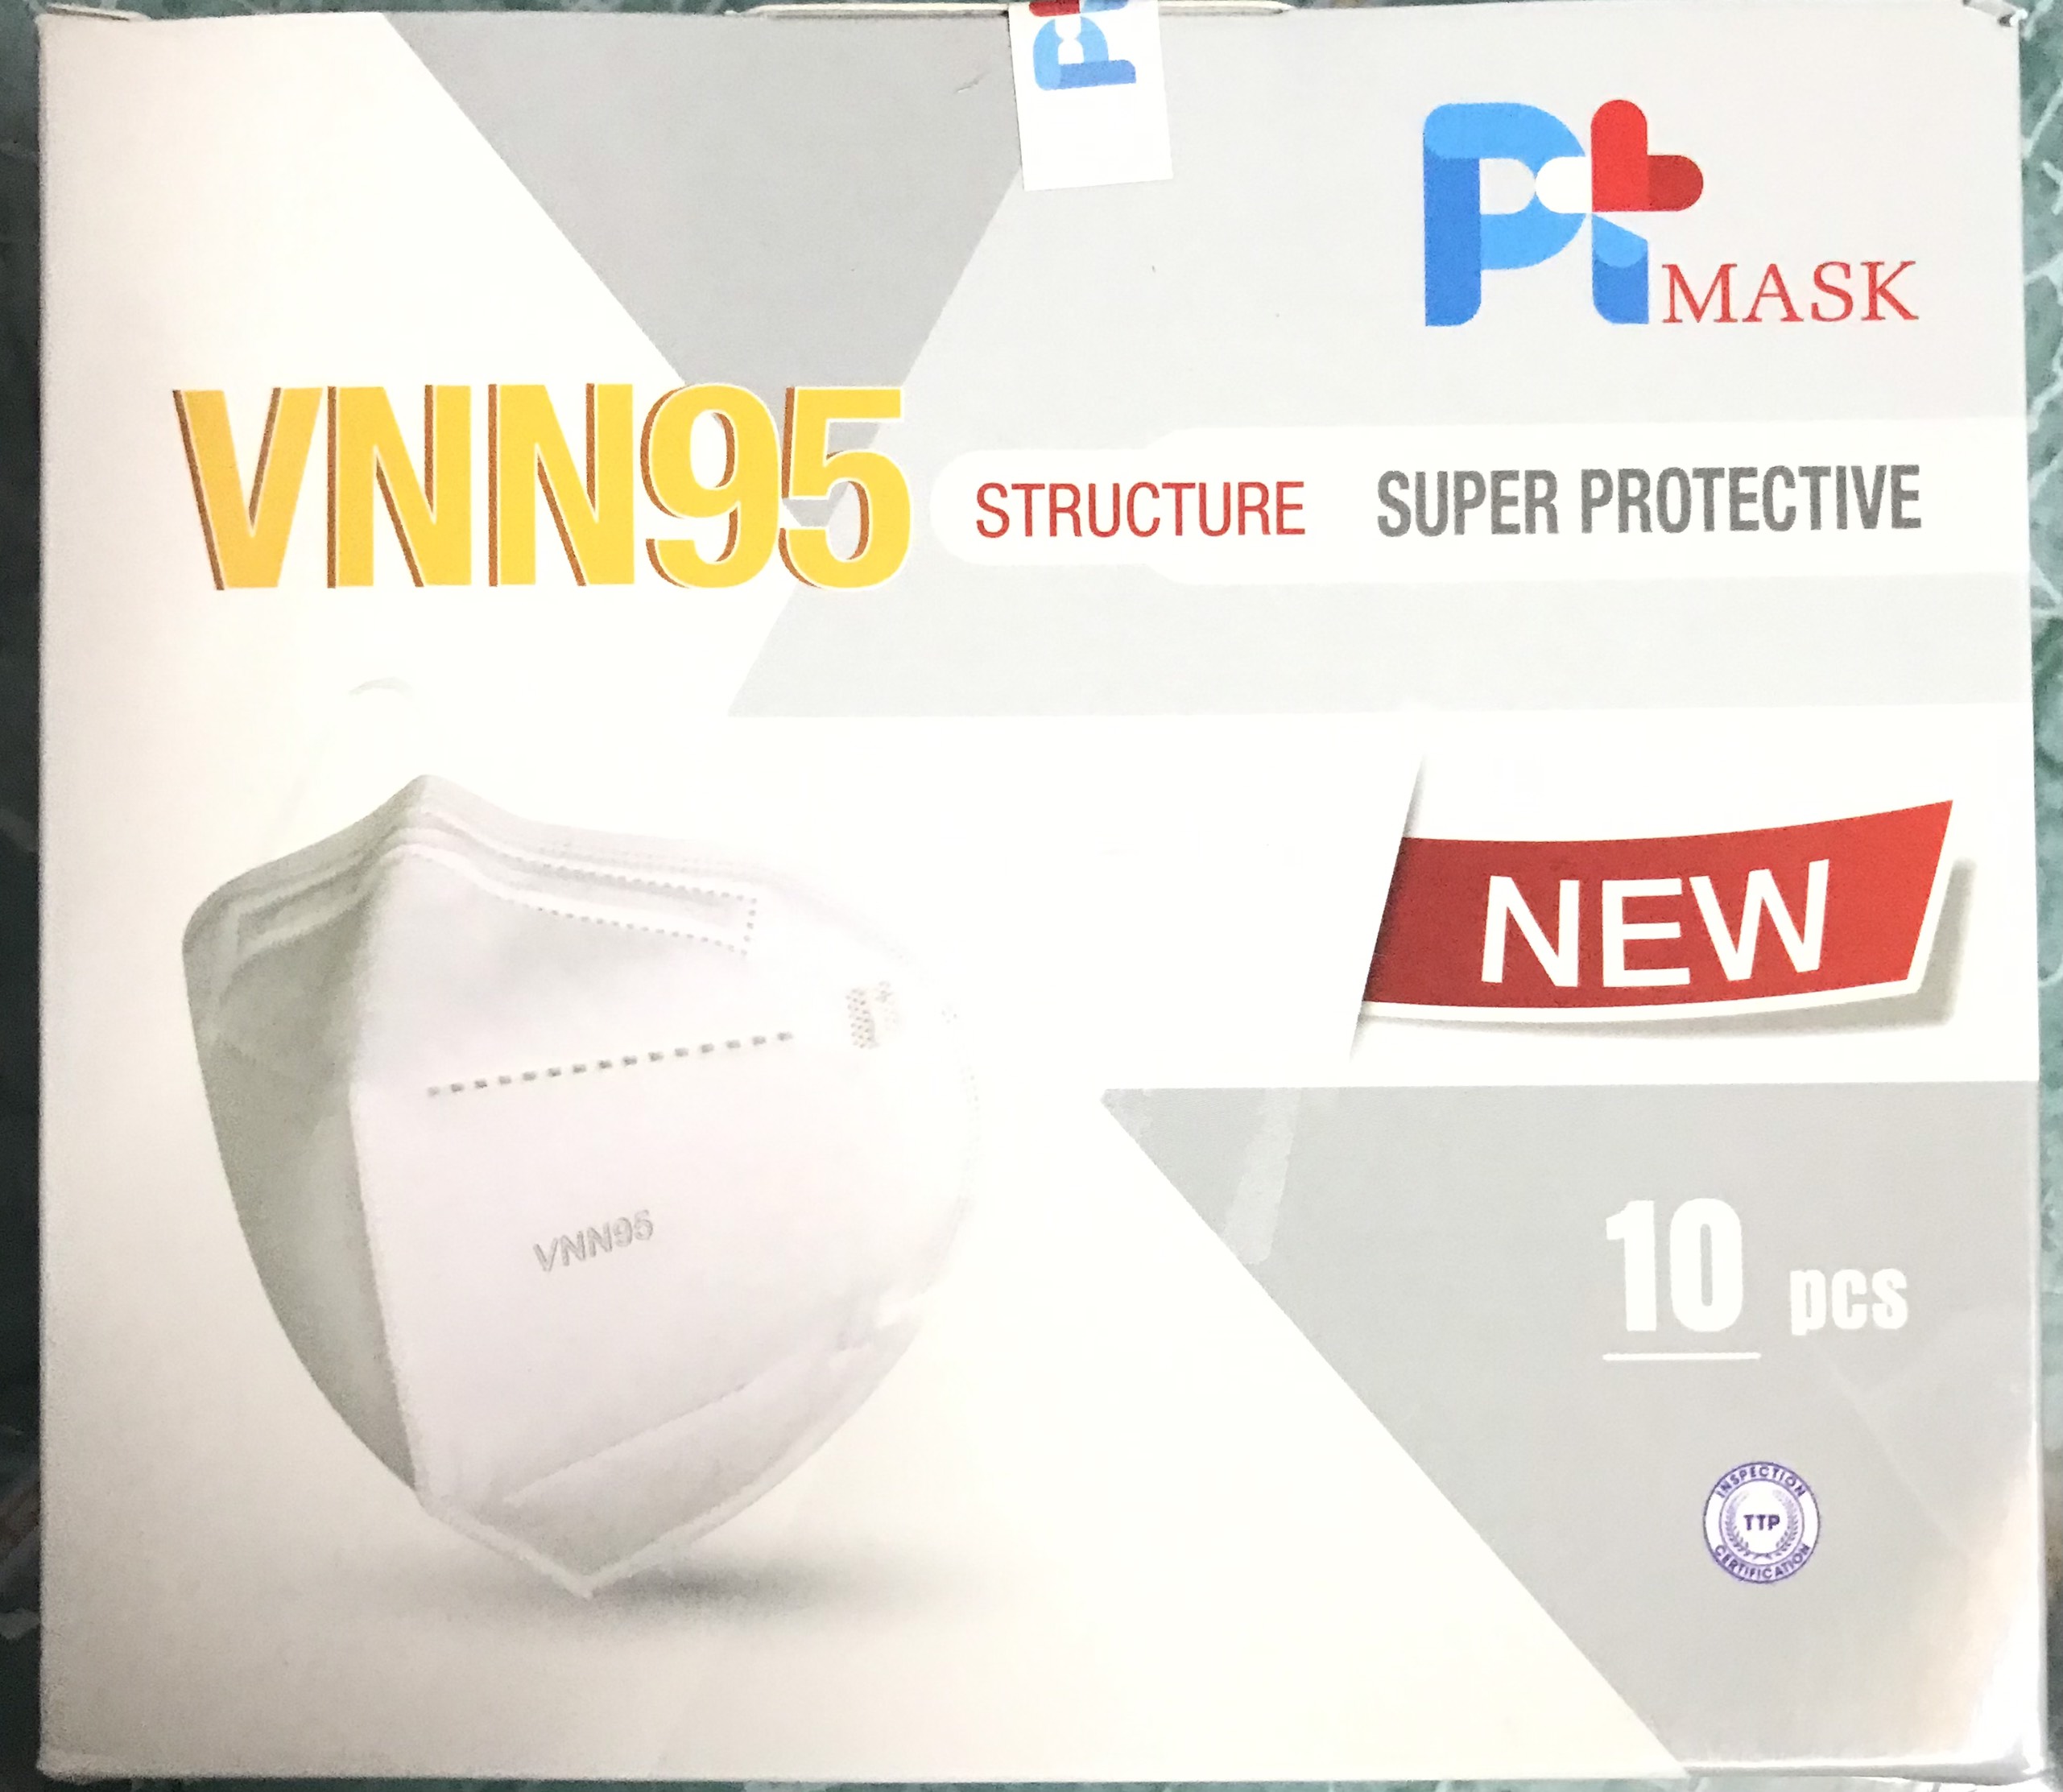 Hộp 10 Cái Khẩu Trang VNN95 PT Mask, 5 Lớp, kháng Khuẩn, Chống Bụi Siêu Mịn PM2.5, Màu Trắng - Đạt Các Chứng Chỉ ISO 13485, ISO 9001, CE, FDA, TGA.